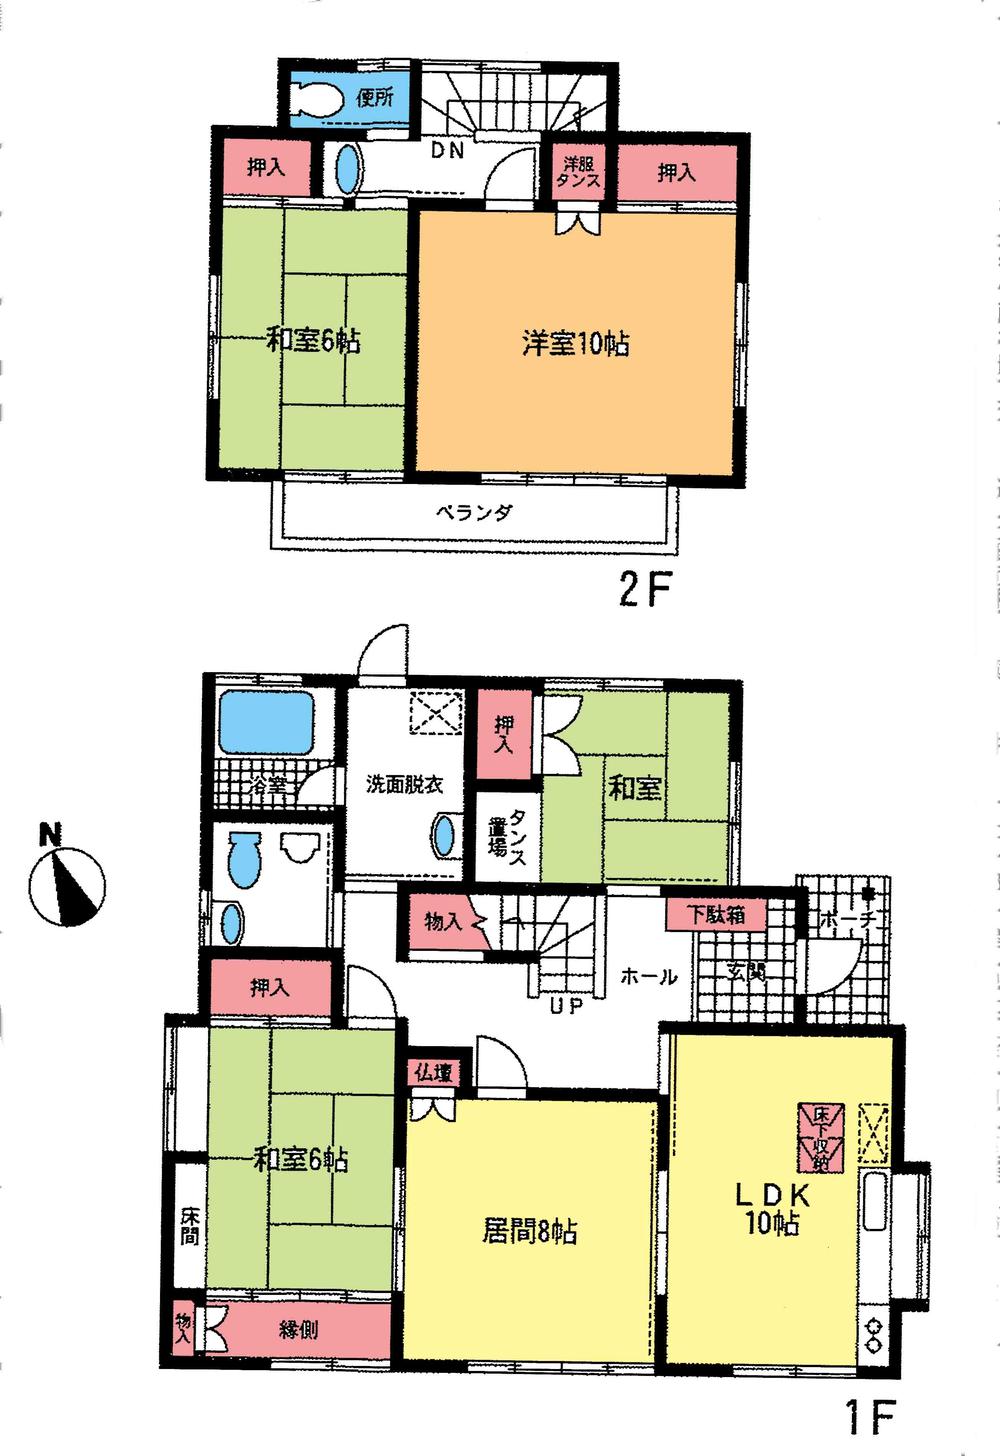 Floor plan. 18,800,000 yen, 4LDK, Land area 200.16 sq m , Building area 118.24 sq m floor plan